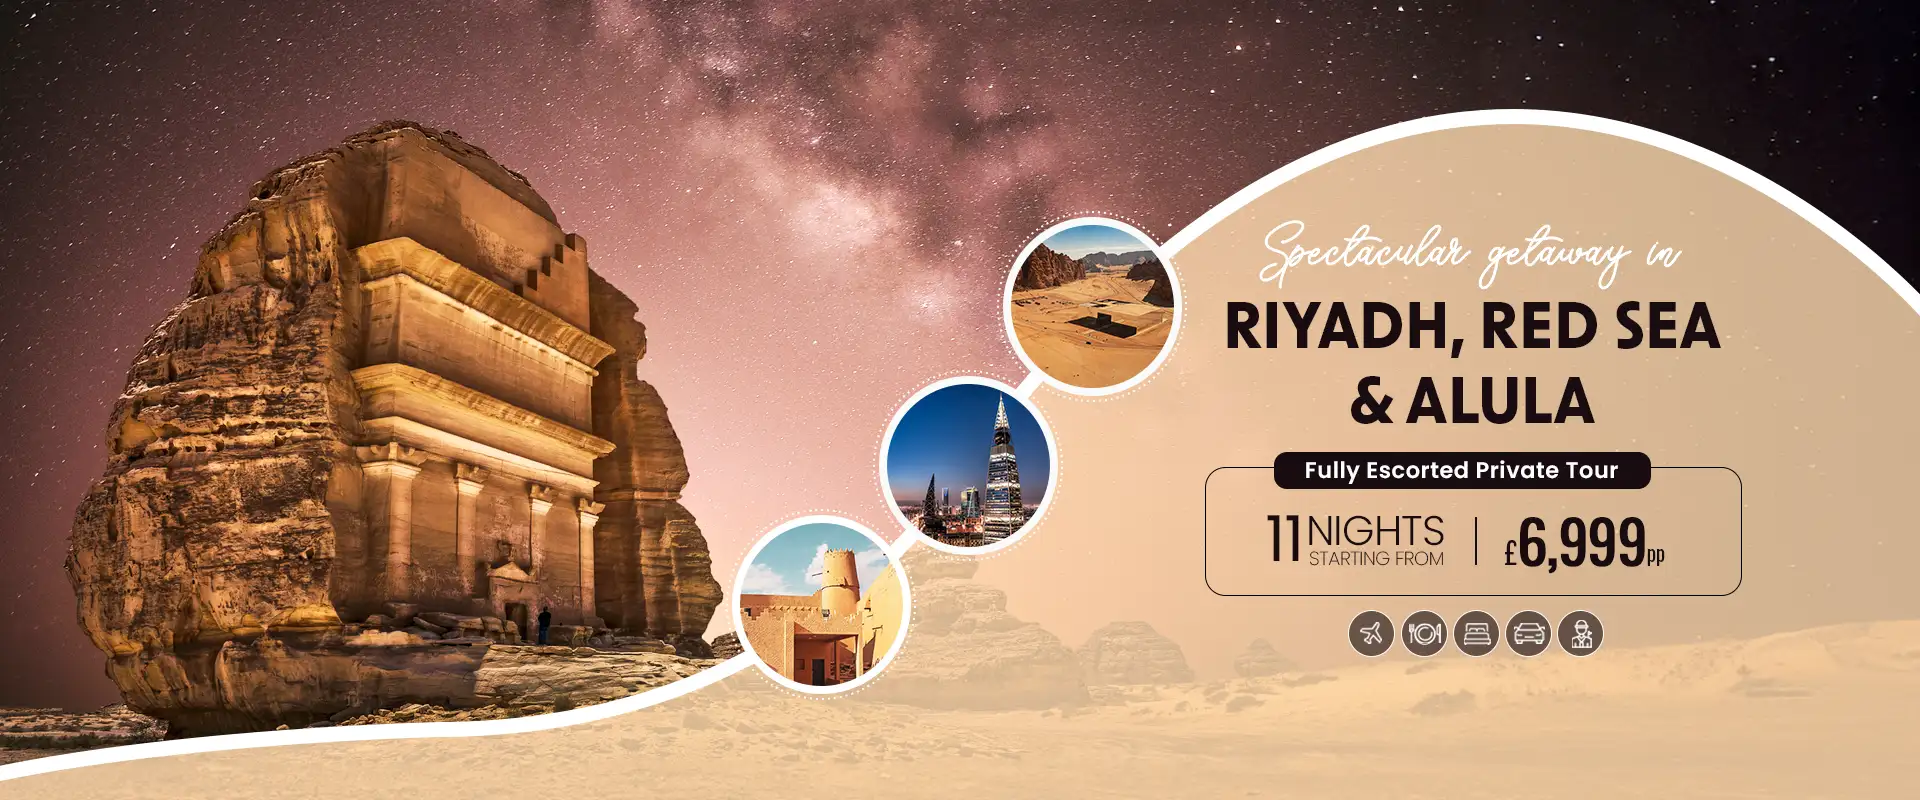 Spectacular Getaway in Riyadh, Red Sea & AlUla